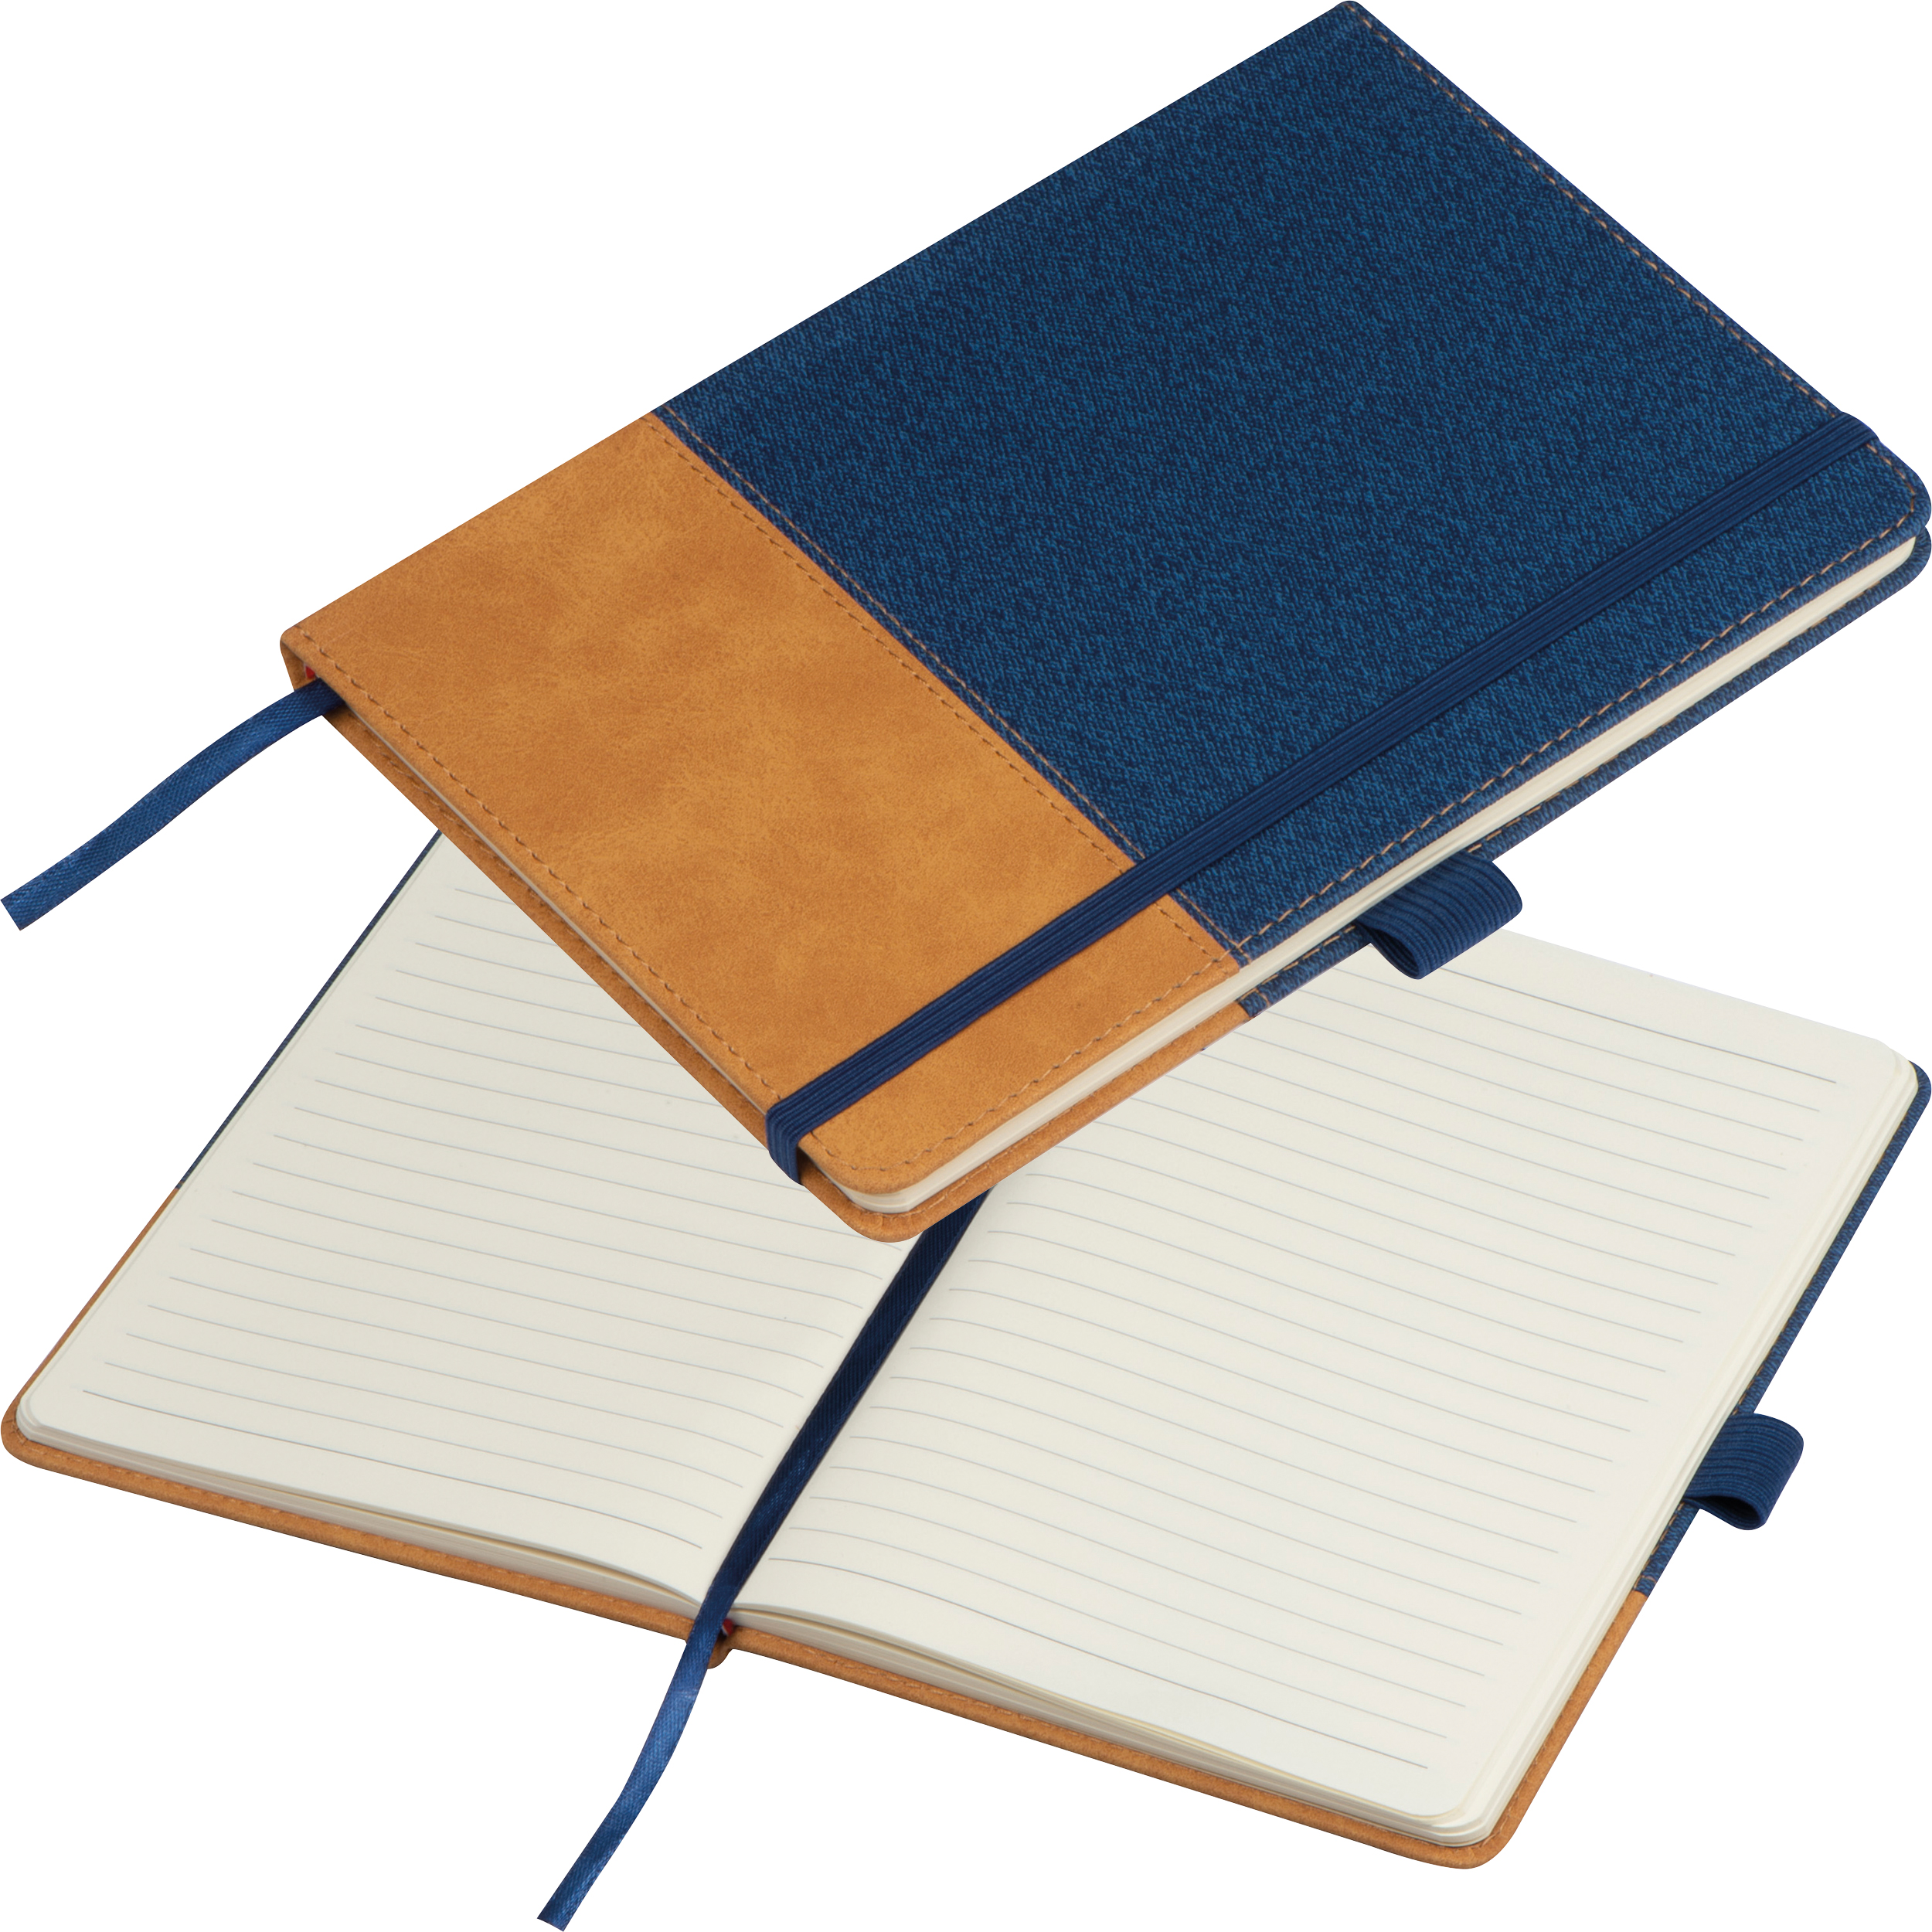 PU notebook 